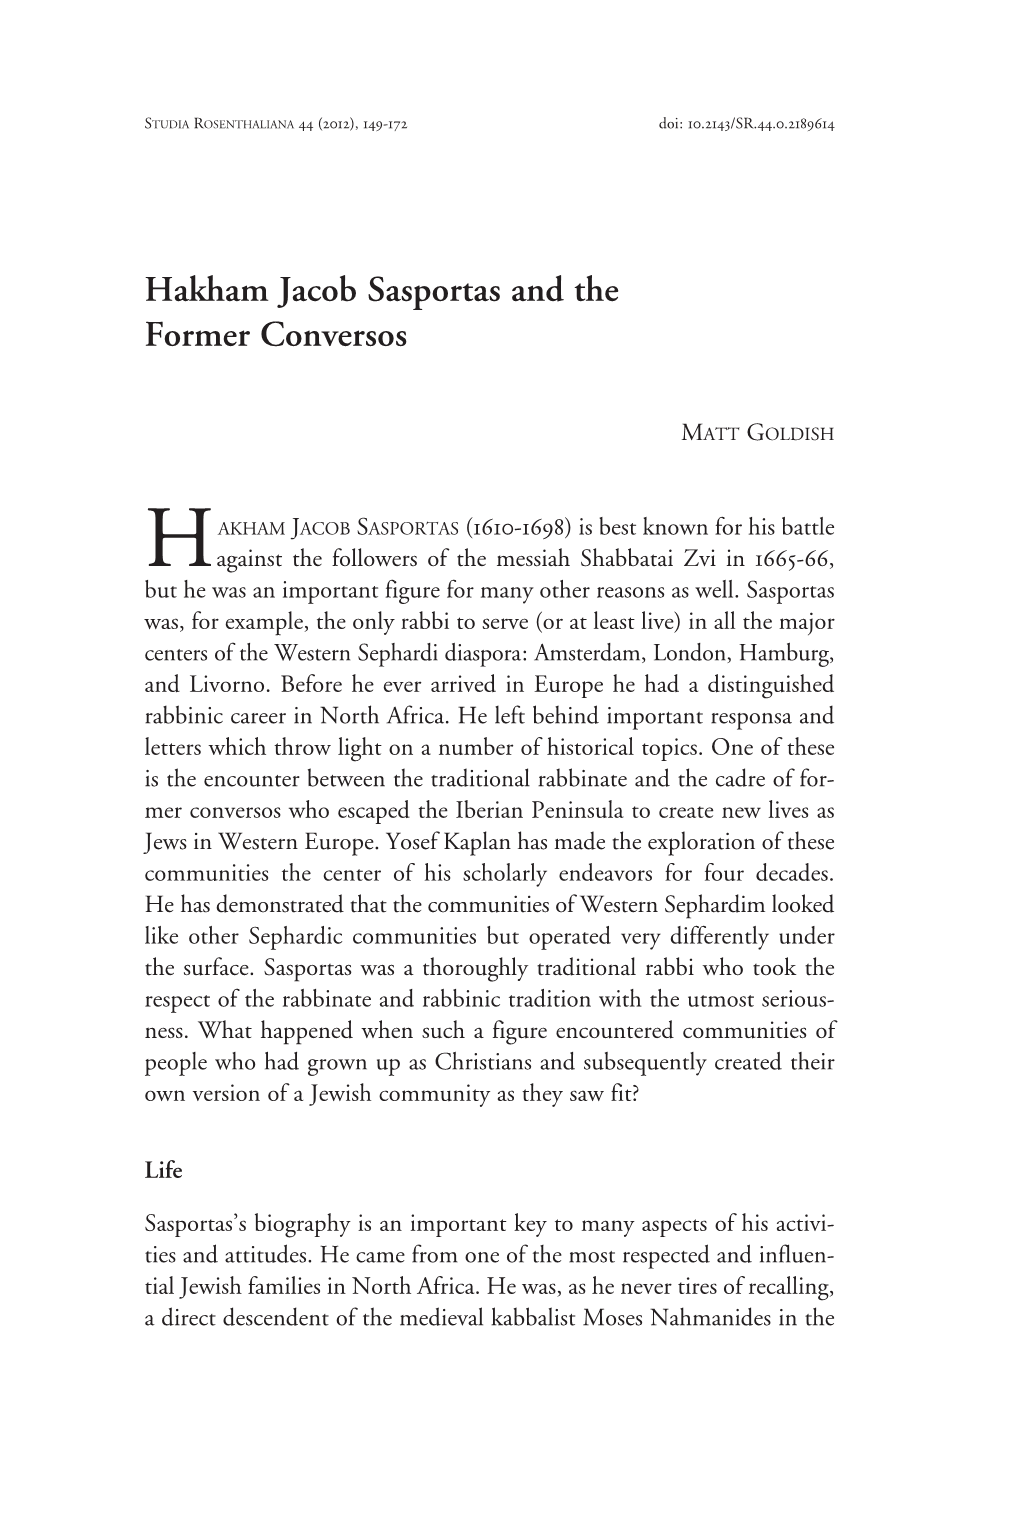 Hakham Jacob Sasportas and the Former Conversos